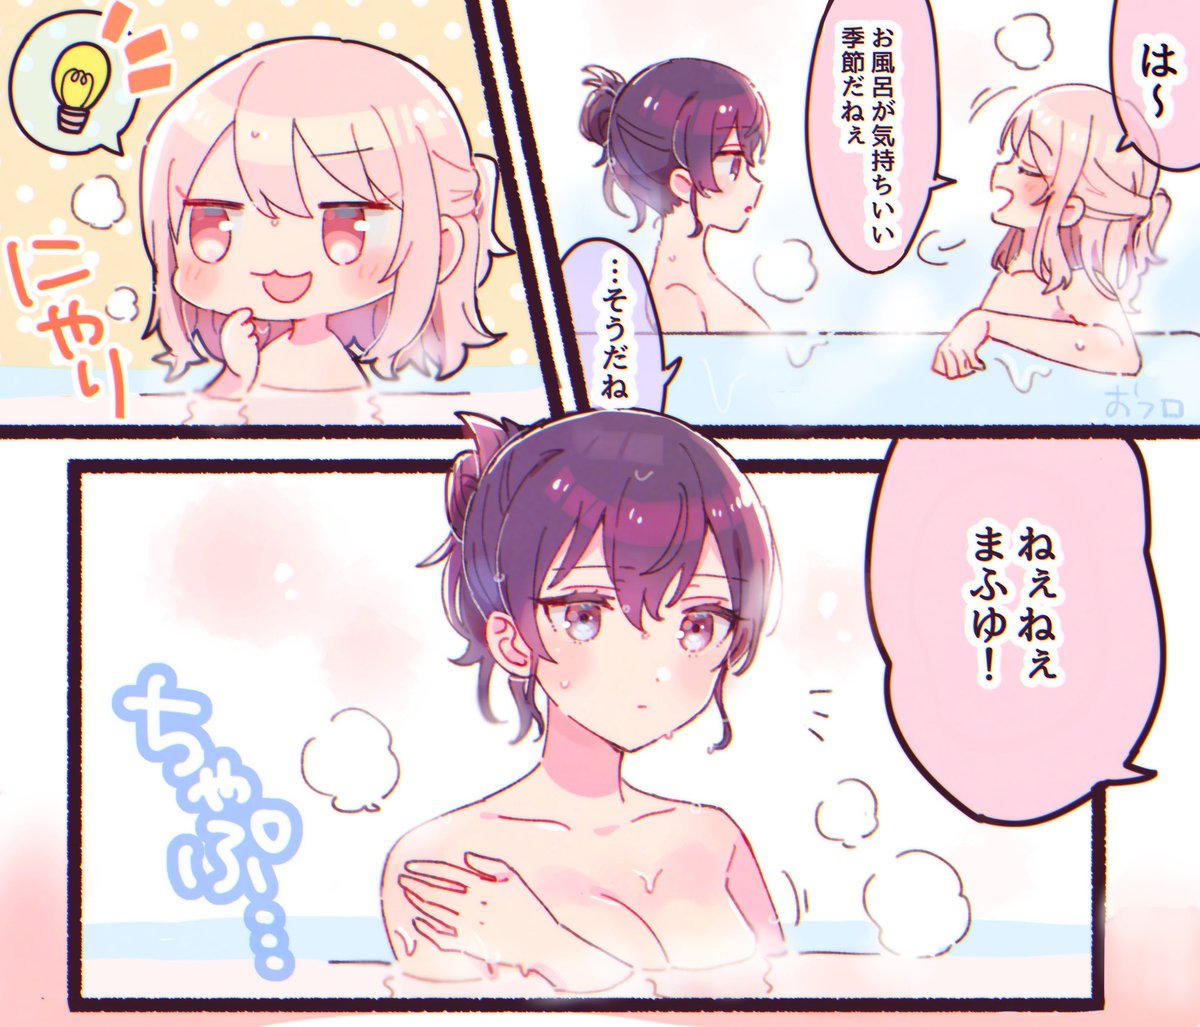 お風呂で遊ぶ同棲mzmf🎀❄️(幻覚)